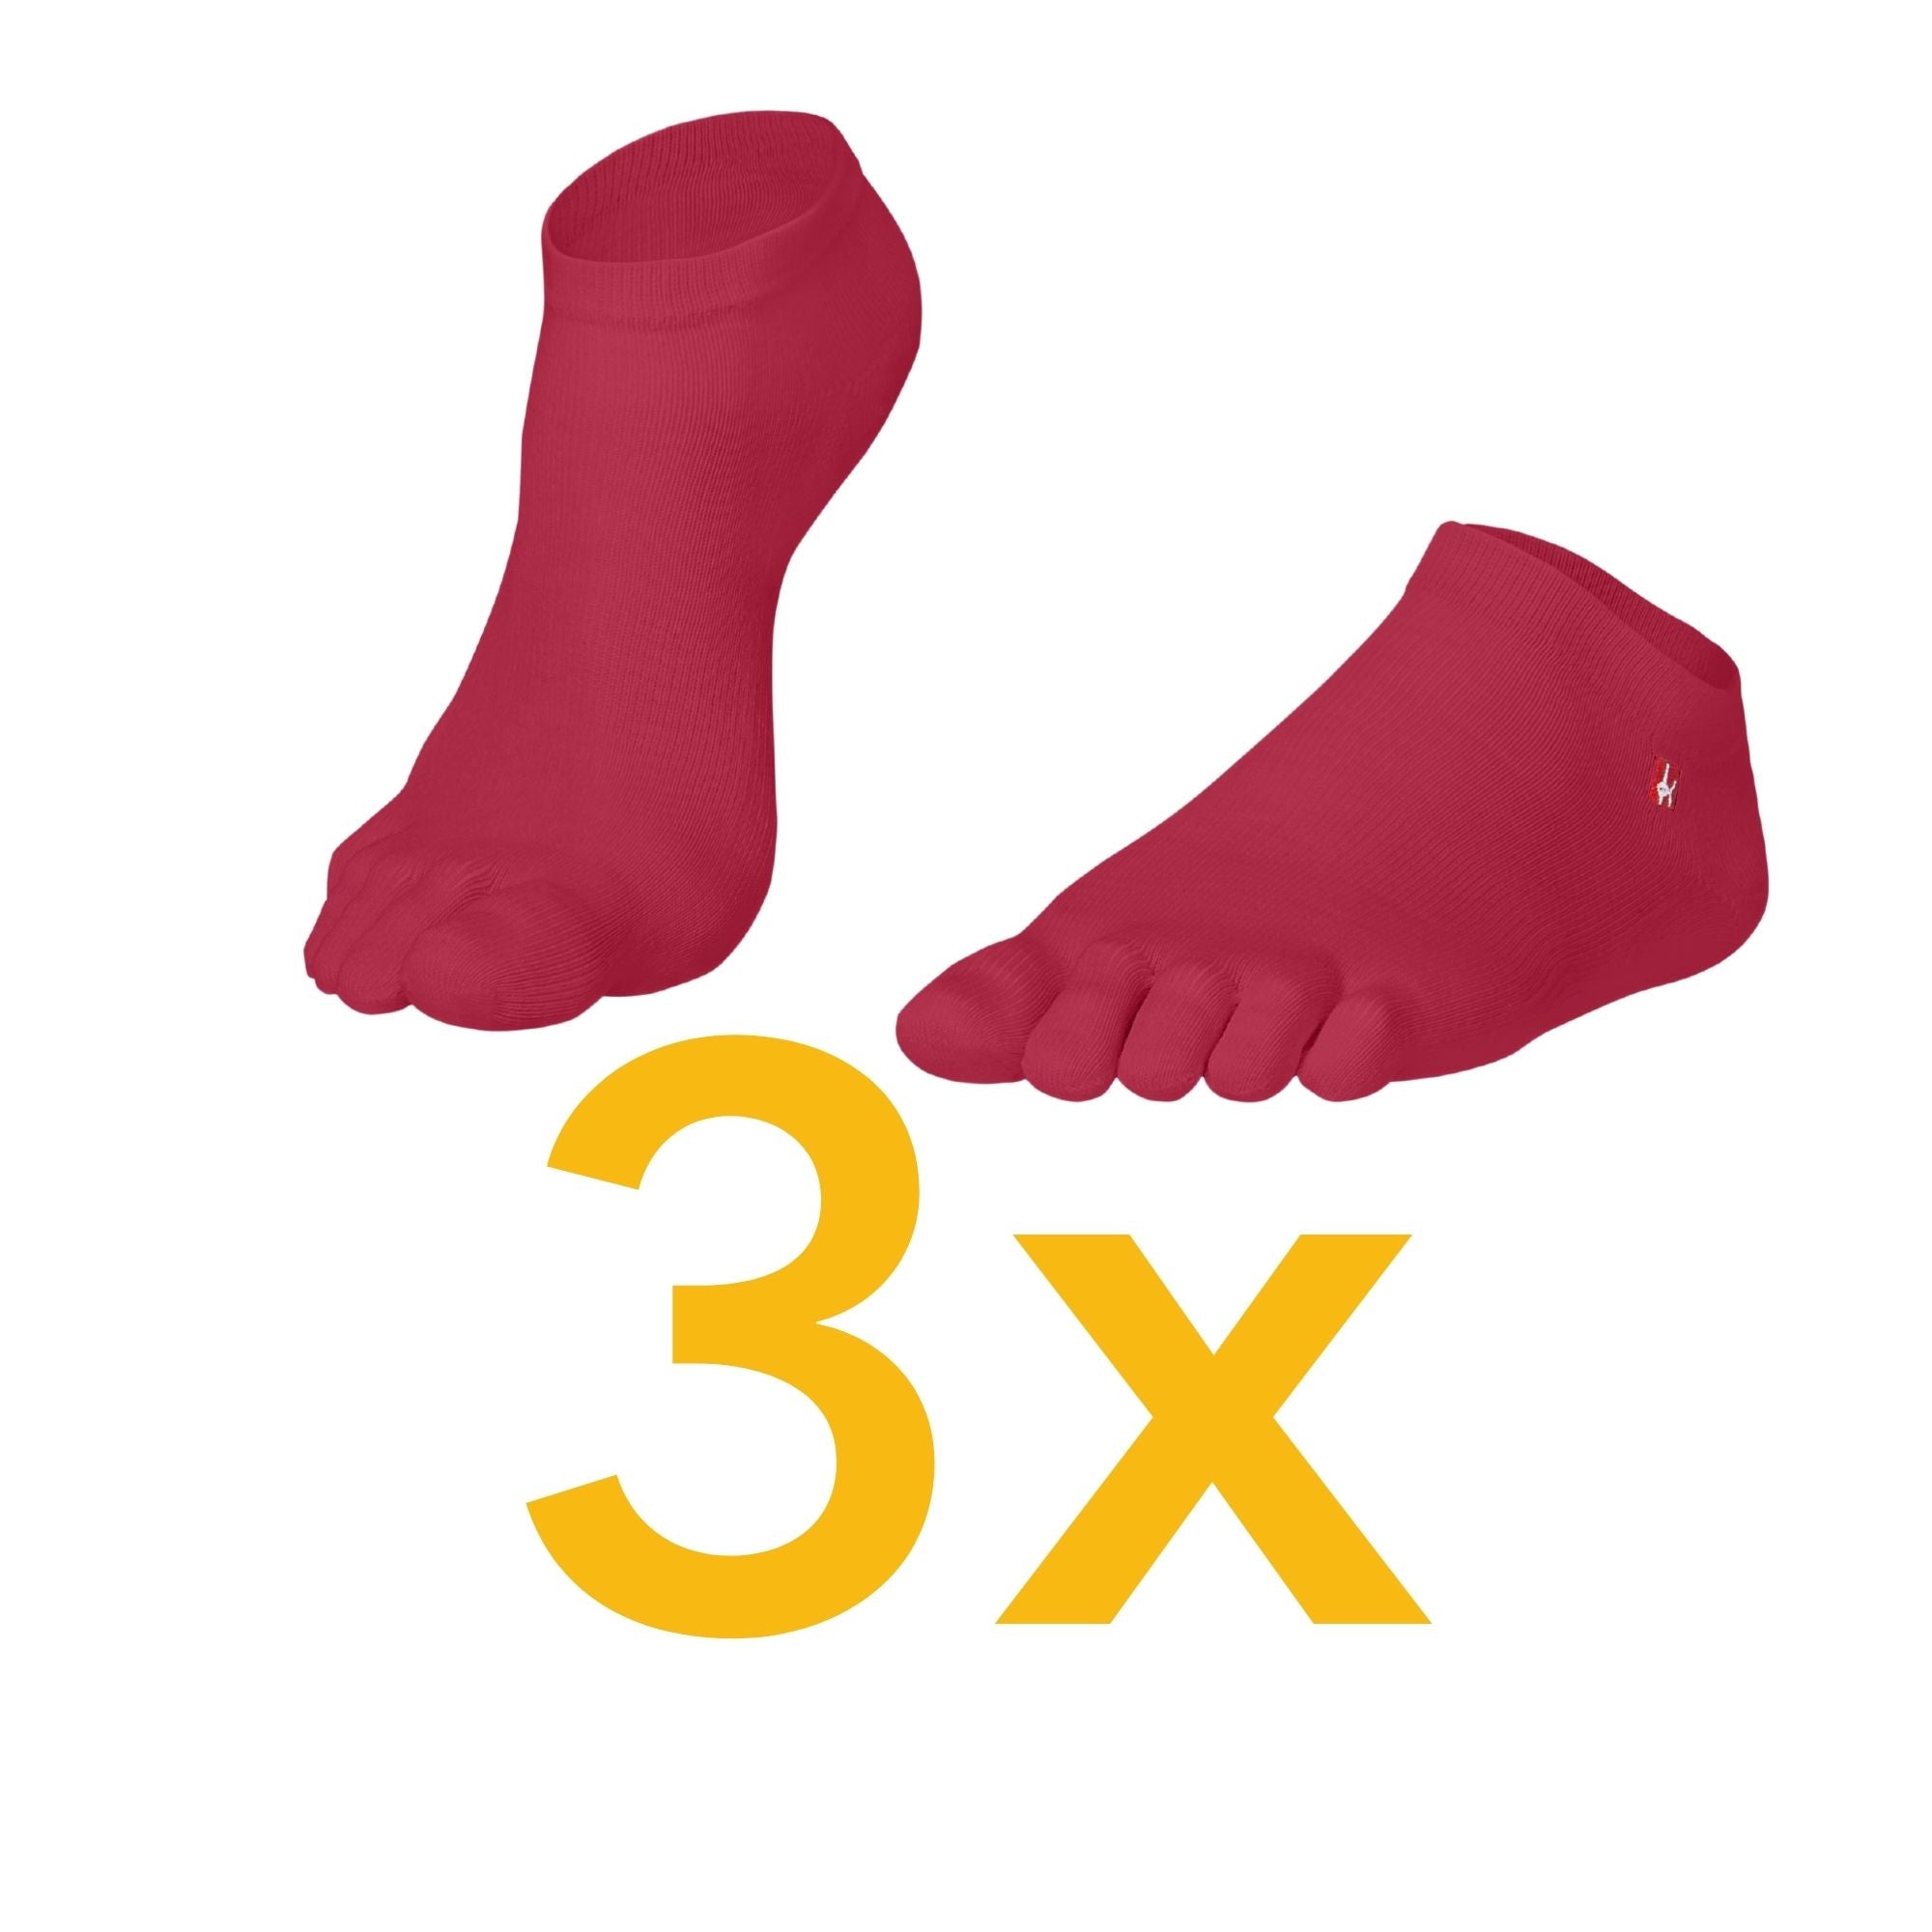 3 pakete športnih nogavic iz materiala Coolmax in bombaža znamke Knitido v marsala rdeči barvi